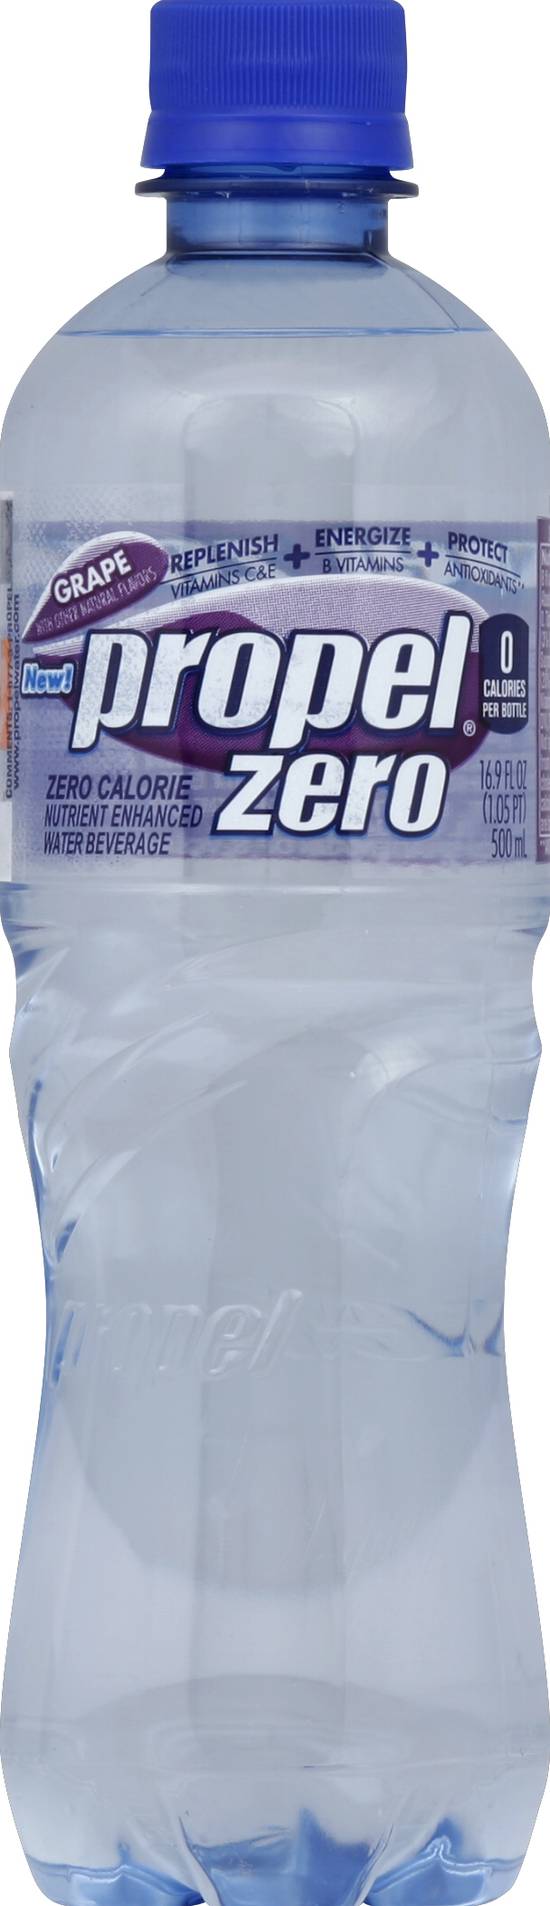 Propel Zero Grape Electrolyte Water (6 ct, 16.9 fl oz)